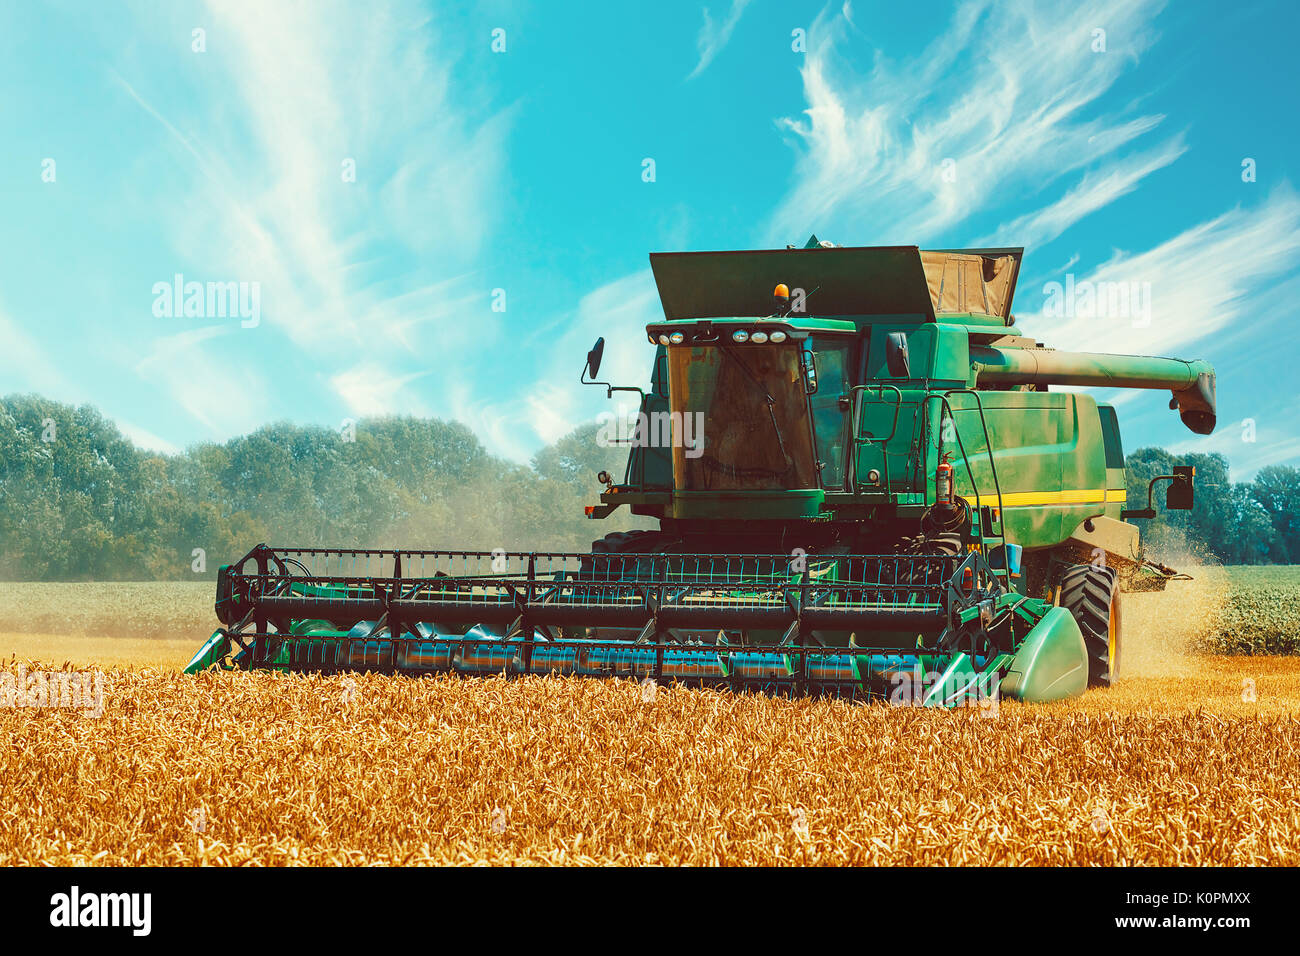 Photo de moissonneuse-batteuse, c'est la récolte. belle arrière-plan d'un champ avec des épis de blé mûrs d'or et bleu ciel Banque D'Images